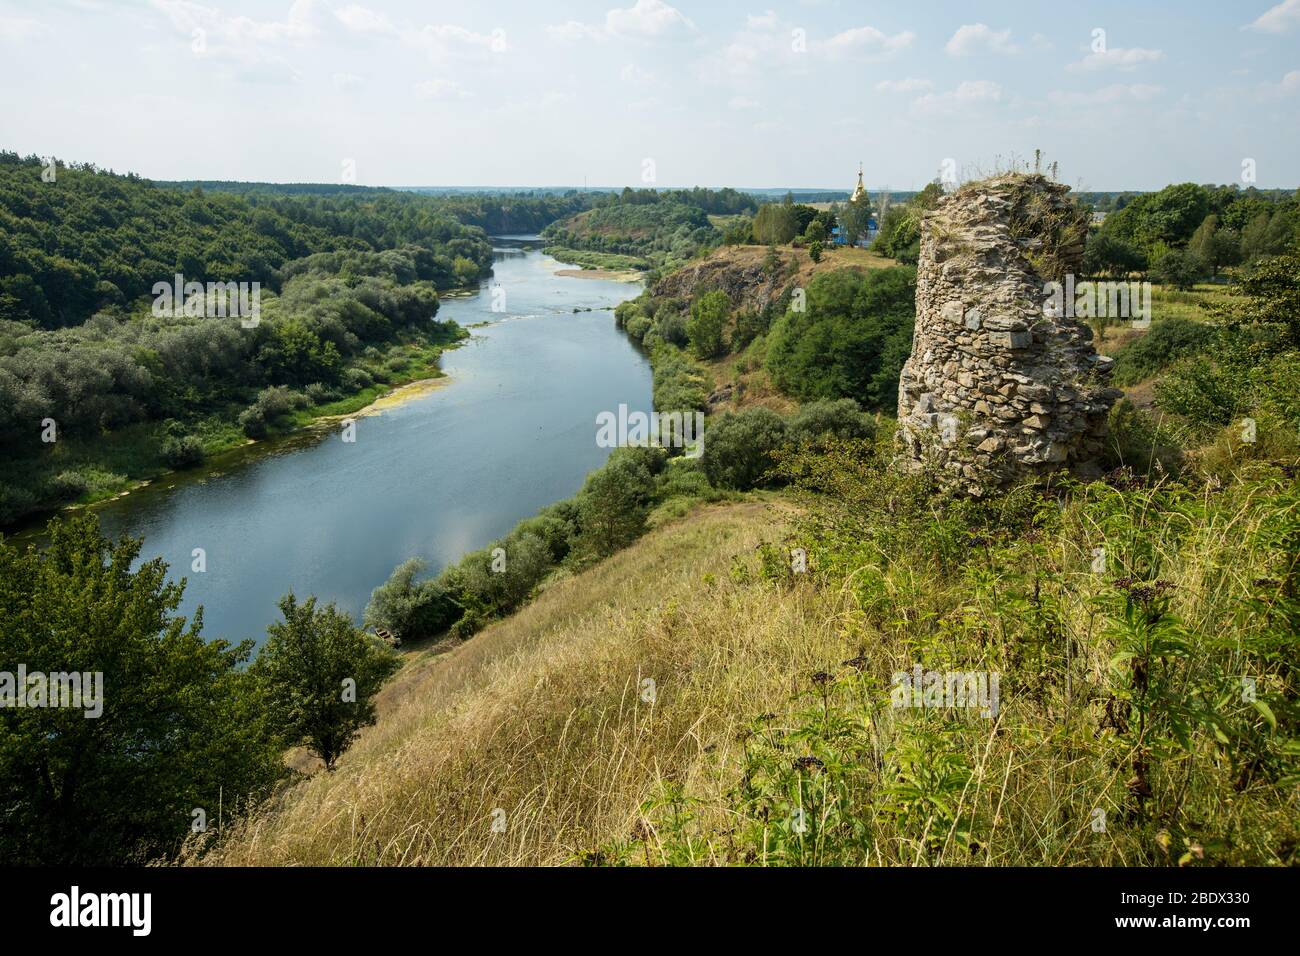 Ruinen von Gubkiv (Hubkiv) Burg auf einem Sluch Fluss Hügel im Sommer in der Nähe von Gubkiv Dorf, Rivne Region, Ukraine. Reiseziele in der Ukraine Stockfoto